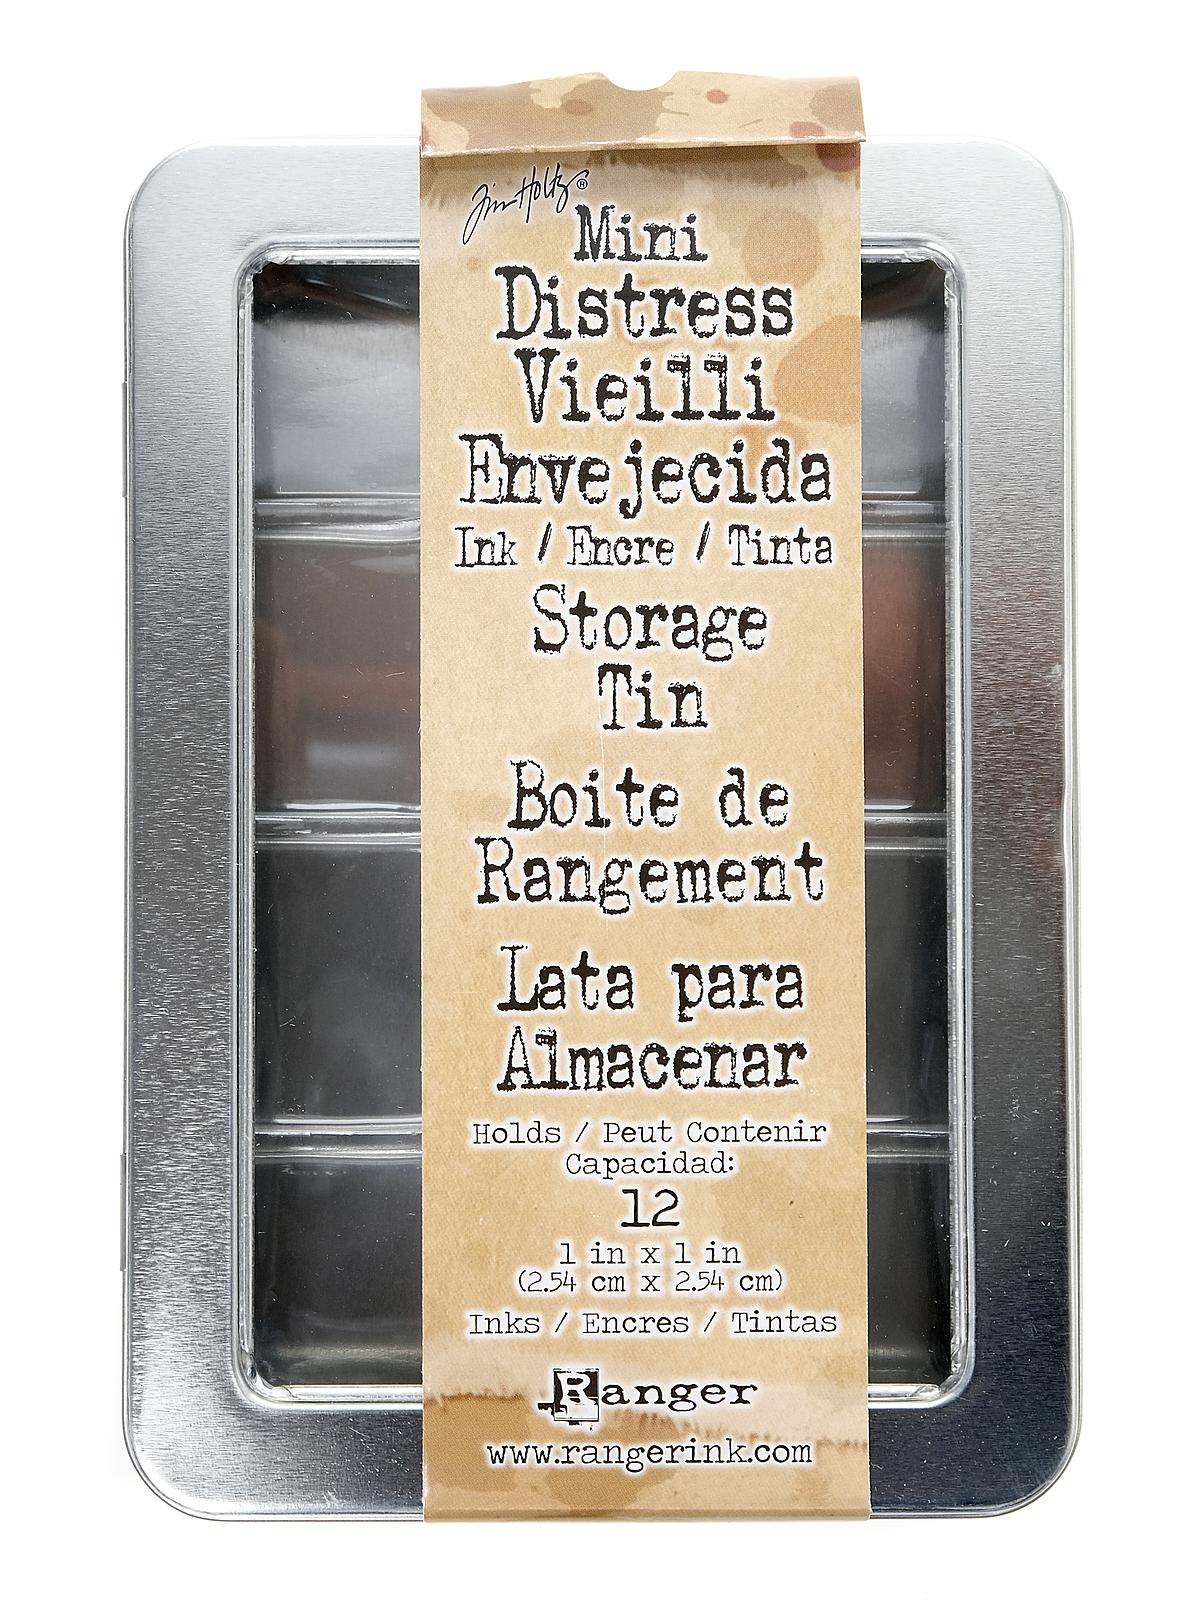 Mini Distress Storage Tin Each